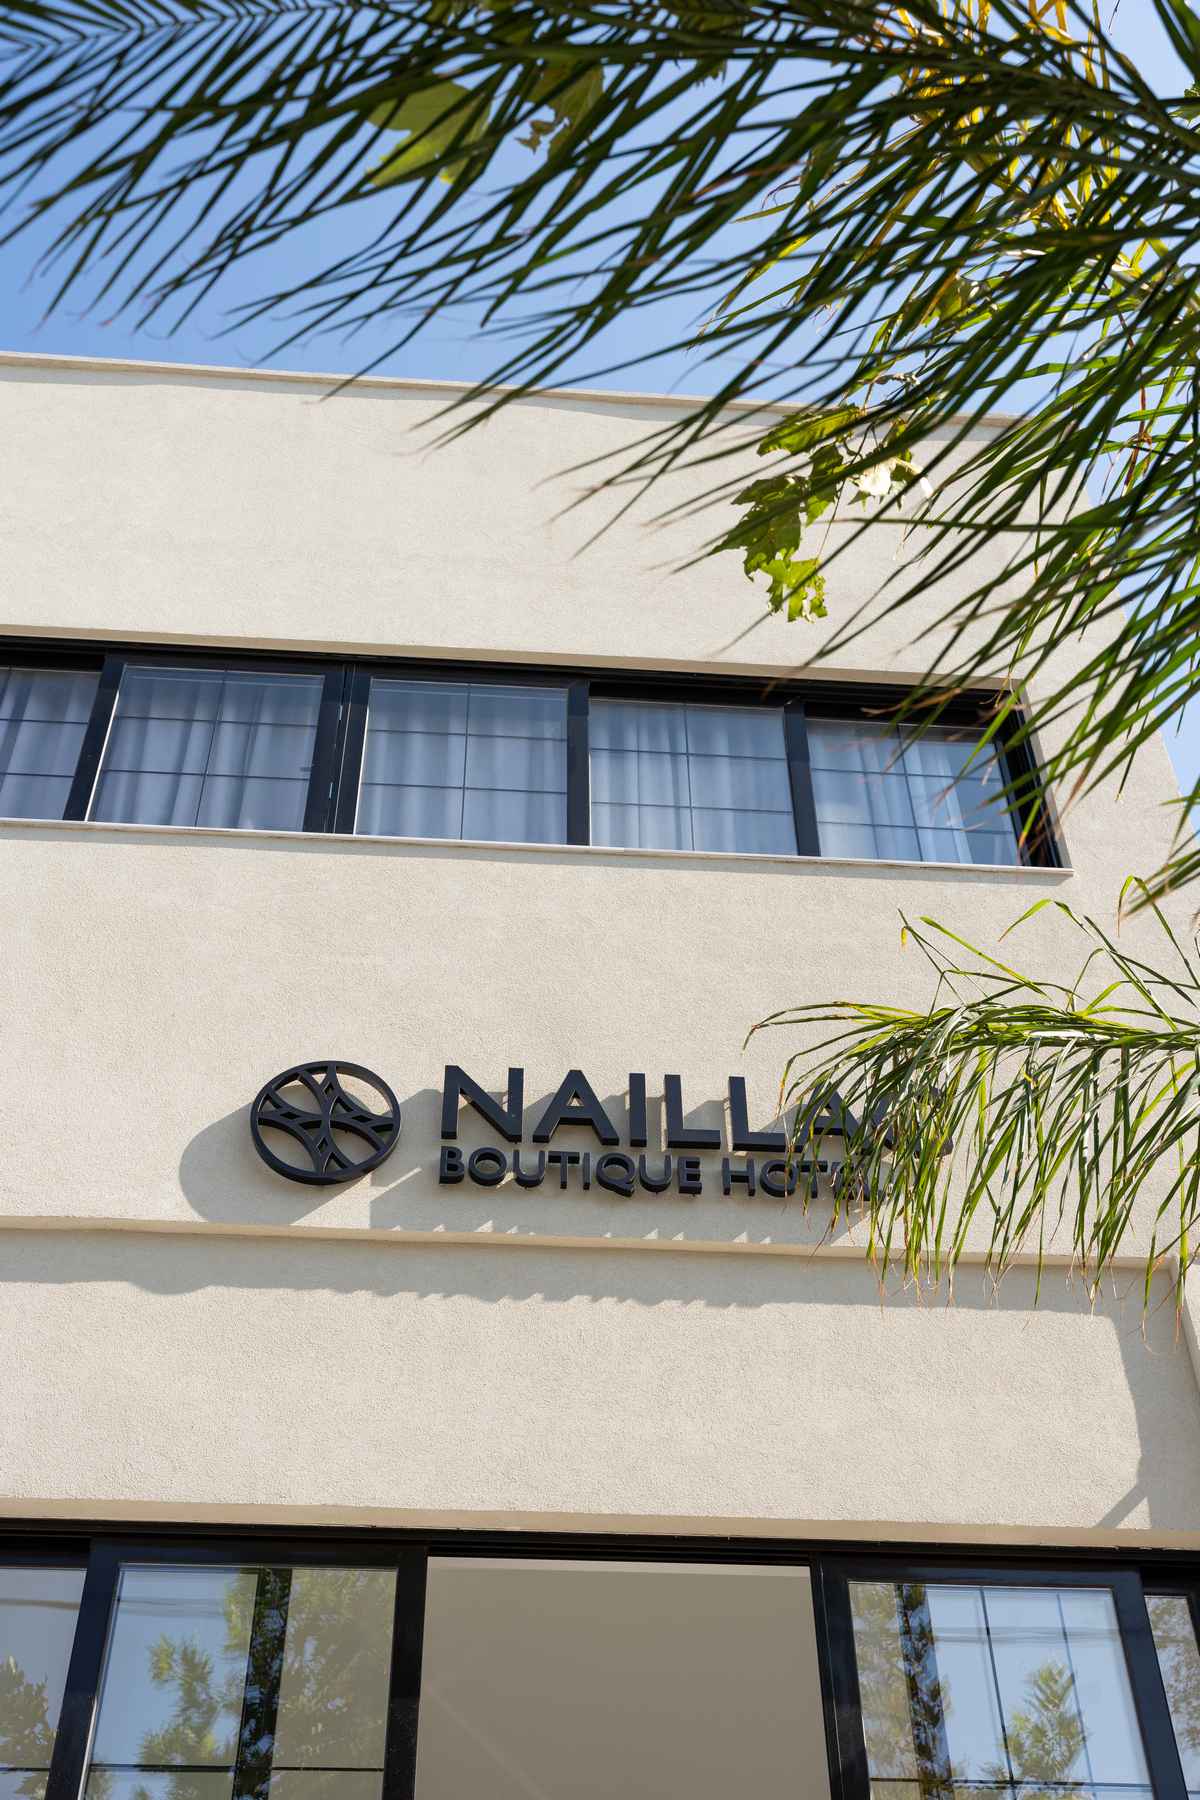 Naillac-Boutique_hotel_rhodes130_50_11zon